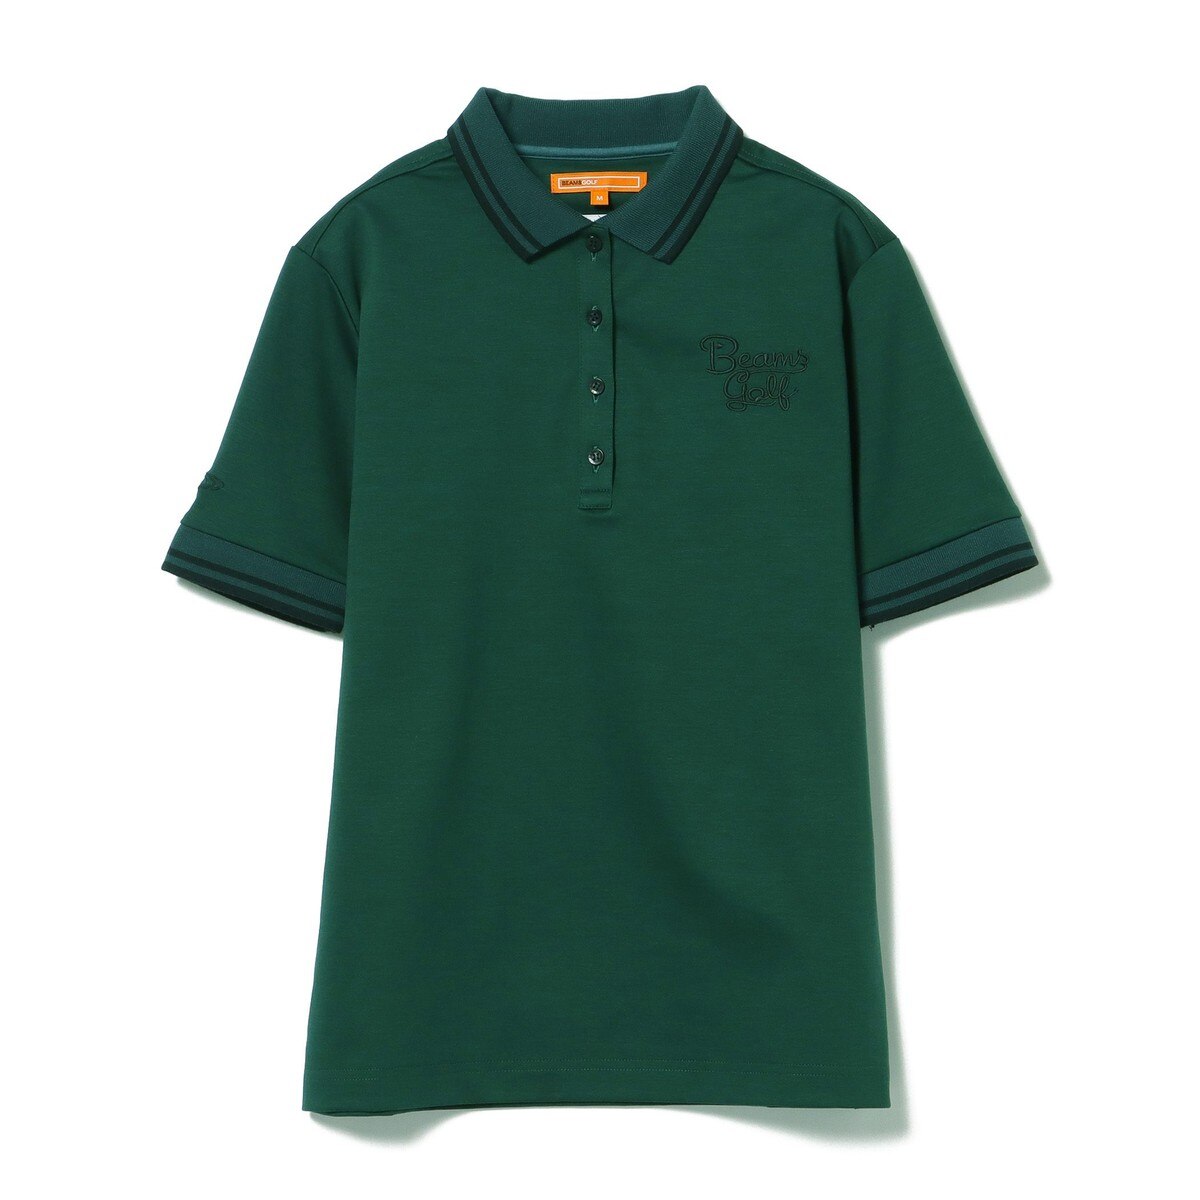 ビームスゴルフ(BEAMS GOLF) ポロシャツ レディス 通販｜GDOゴルフショップ